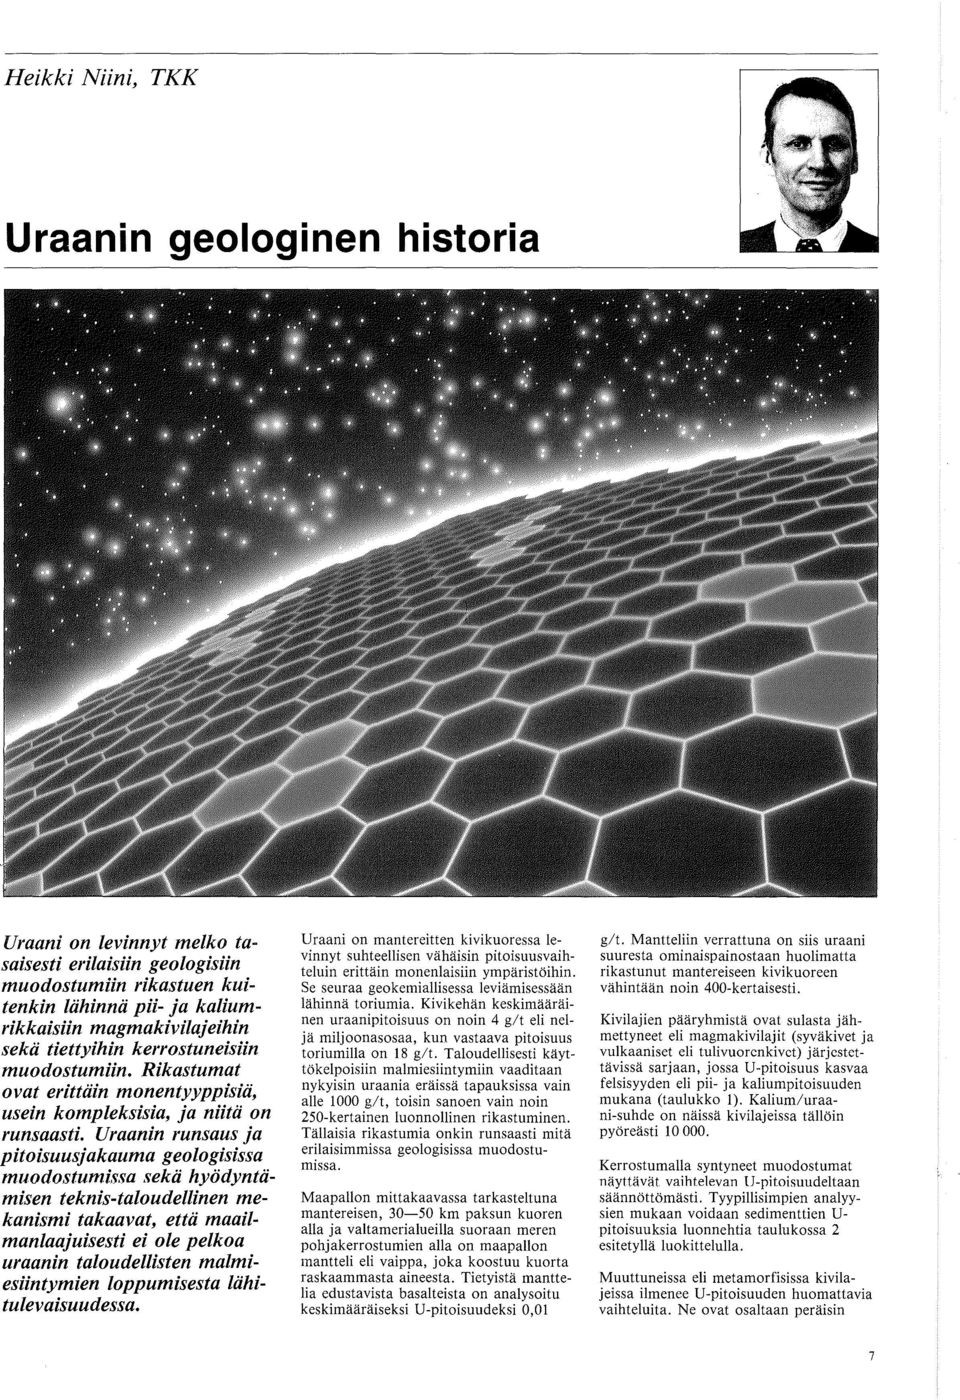 Uraanin runsaus ja pitoisuusjakauma geologisissa muodostumissa sekii hyodyntiimisen teknis-taloudellinen mekanismi takaavat, etta maailmanlaajuisesti ei ole pelkoa uraanin taloudellisten